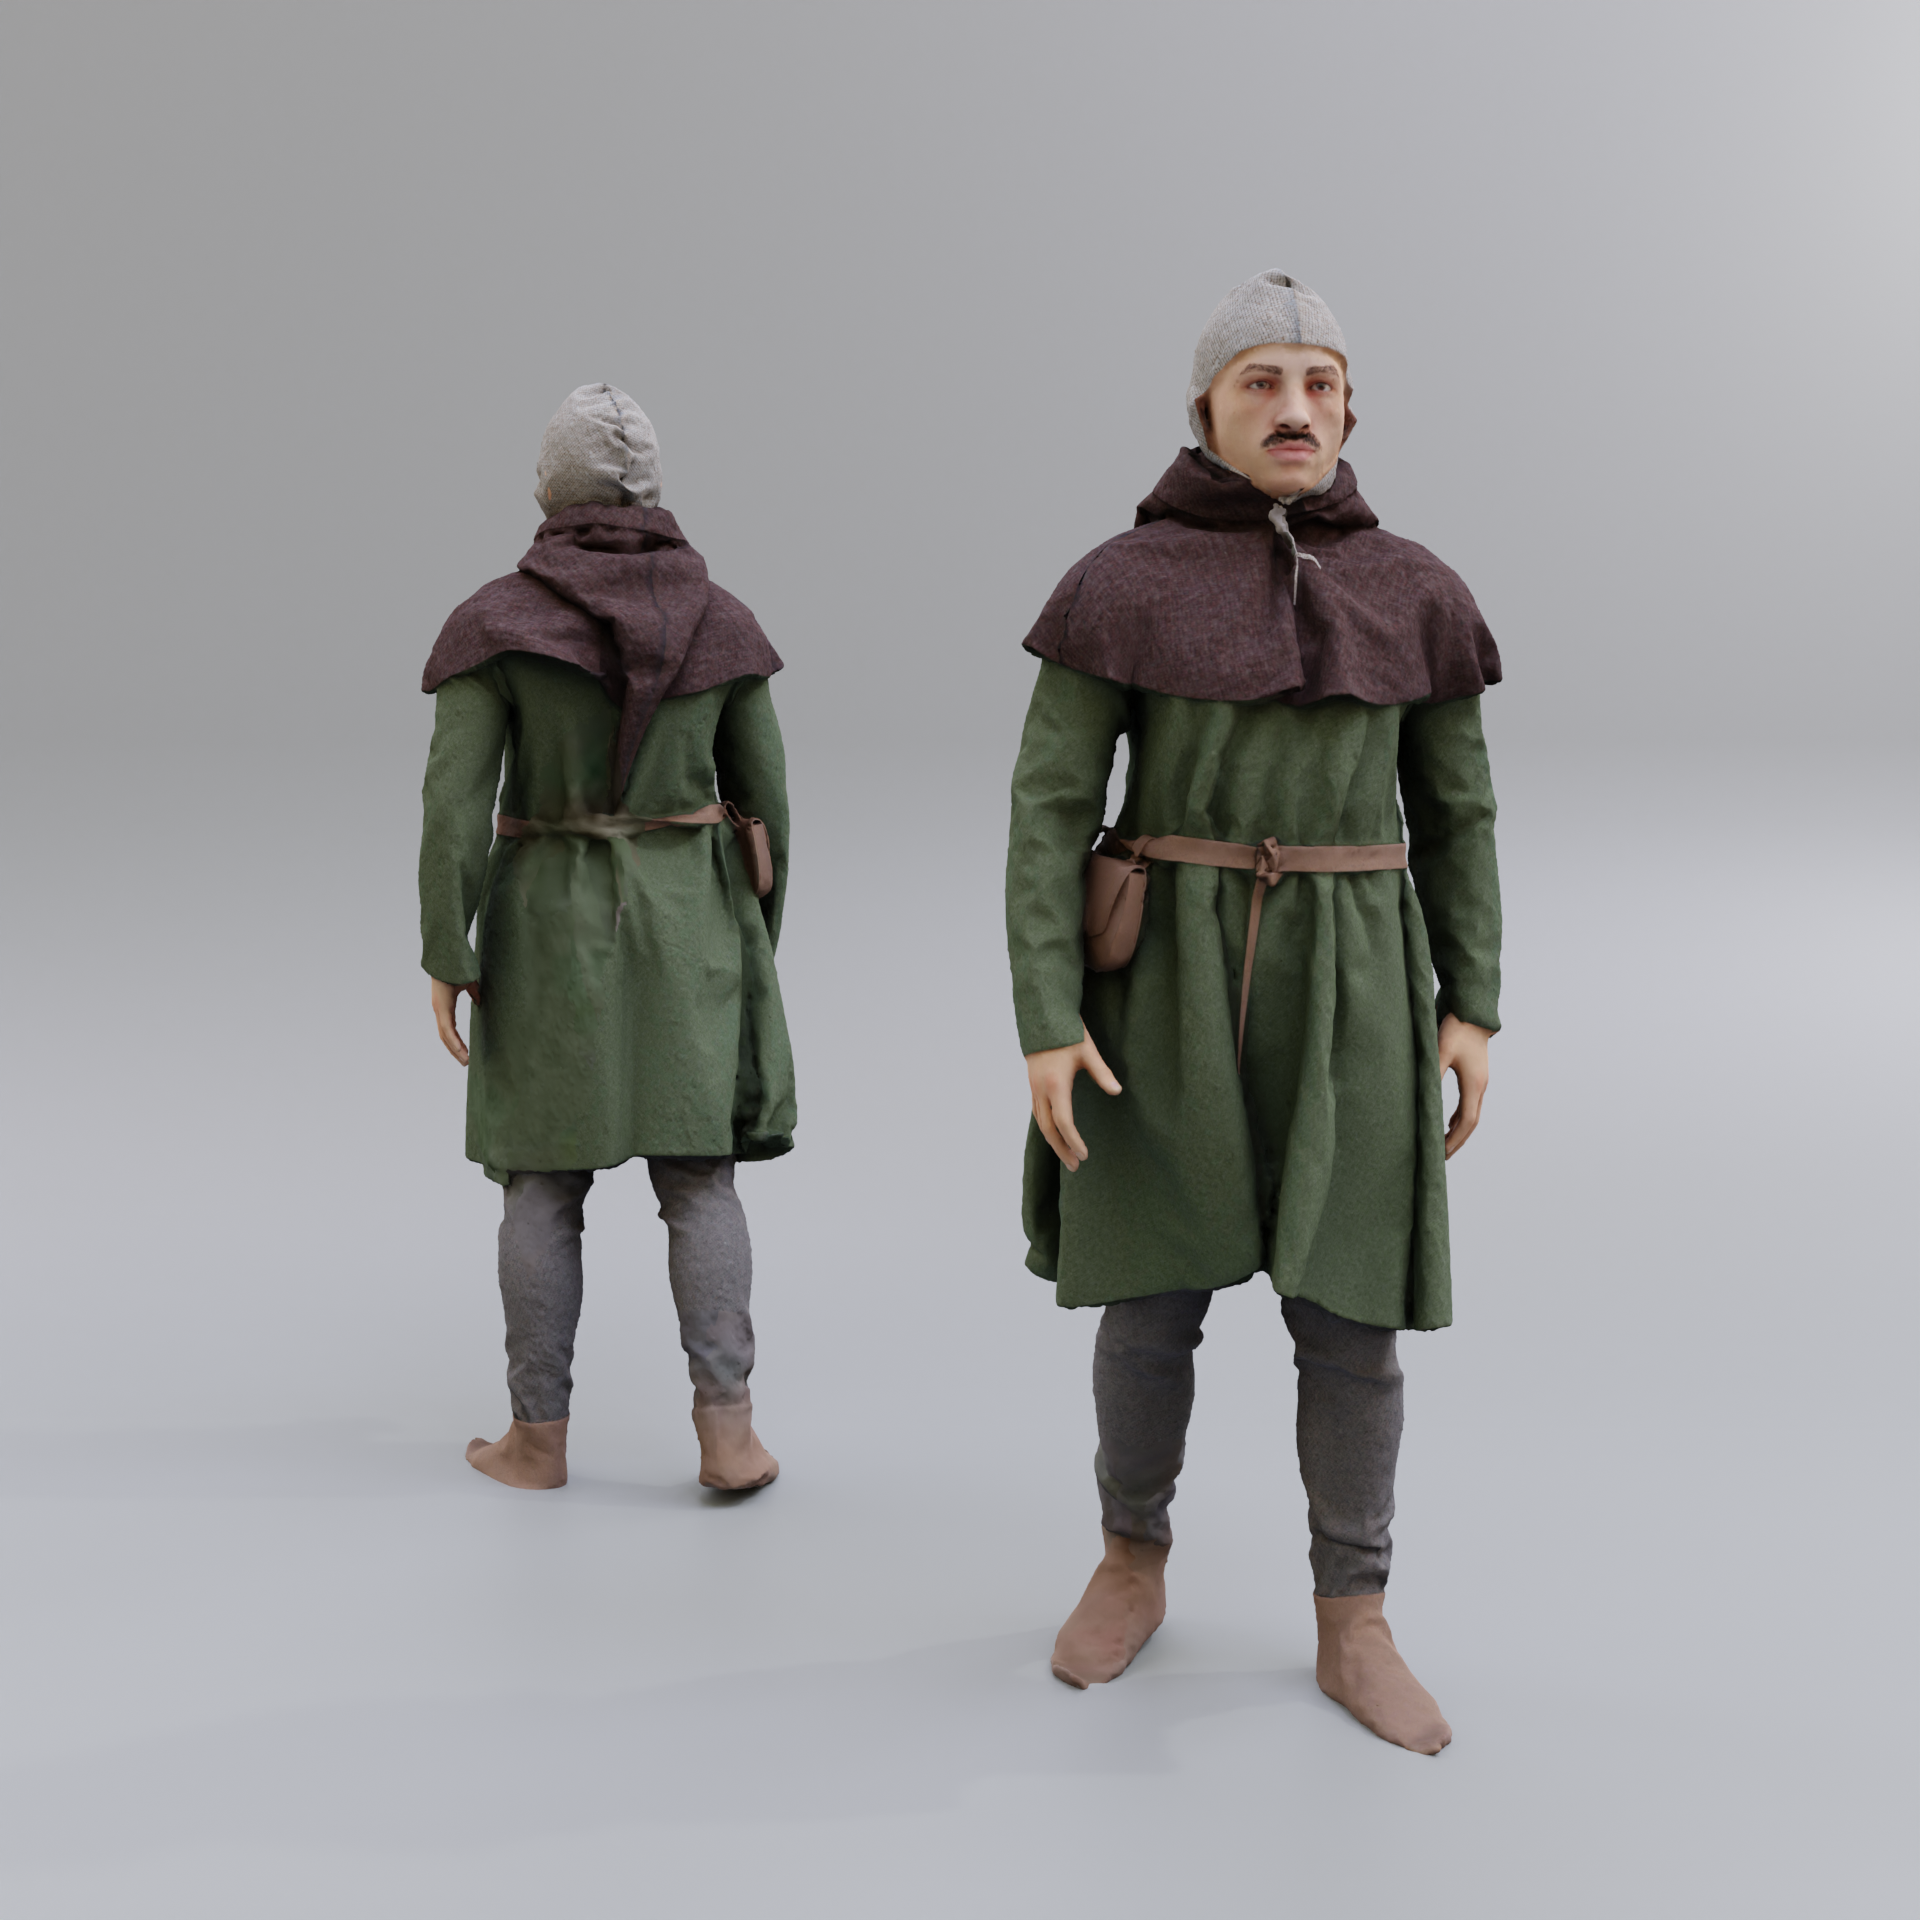 medieval ranger costume